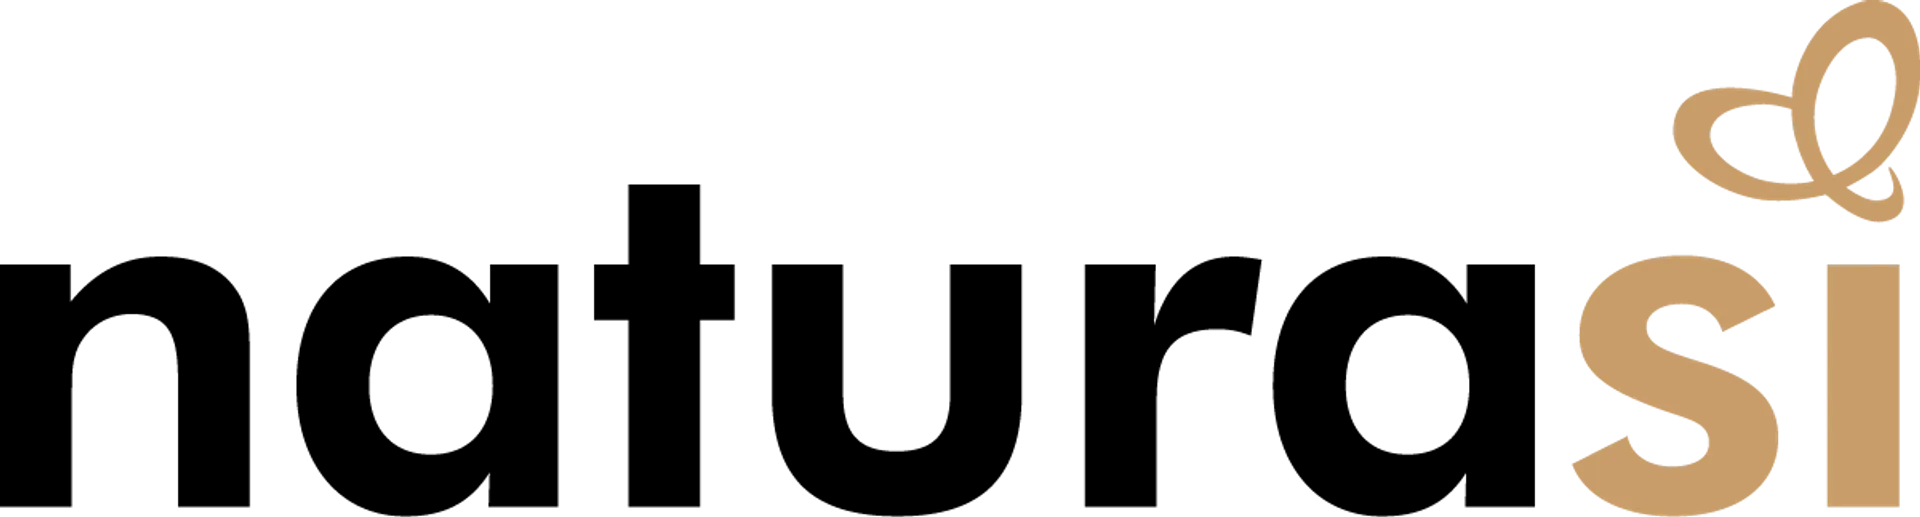 NATURA SÌ logo del volantino attuale